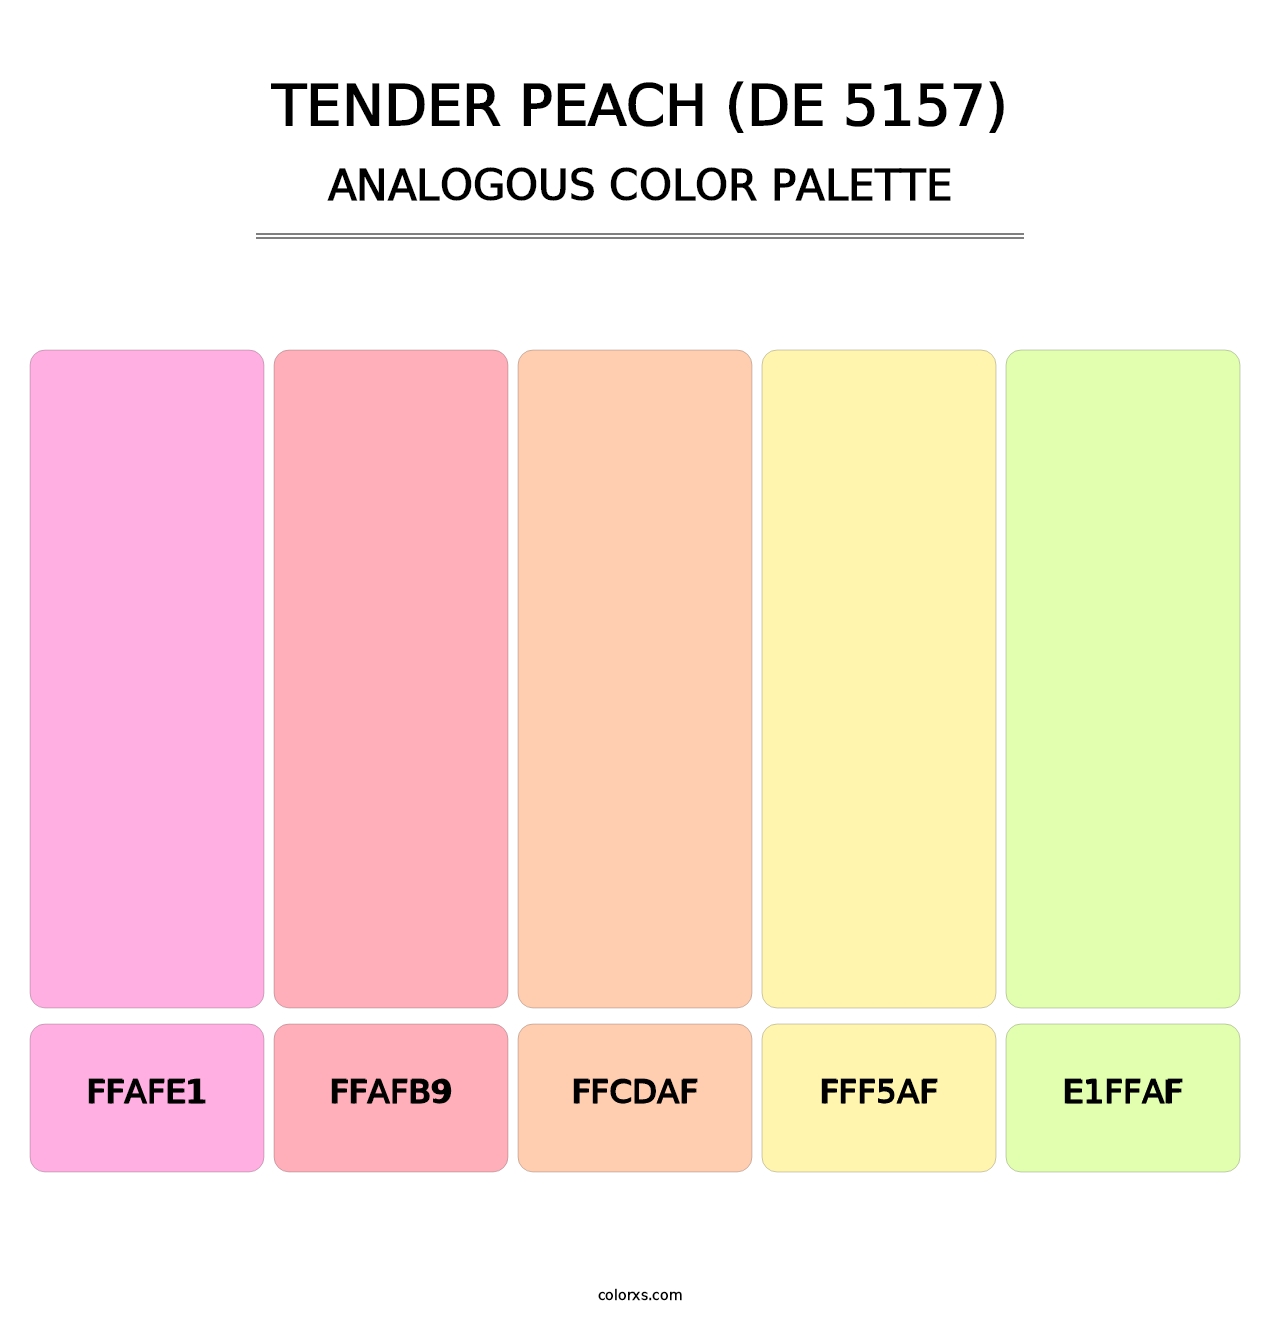 Tender Peach (DE 5157) - Analogous Color Palette